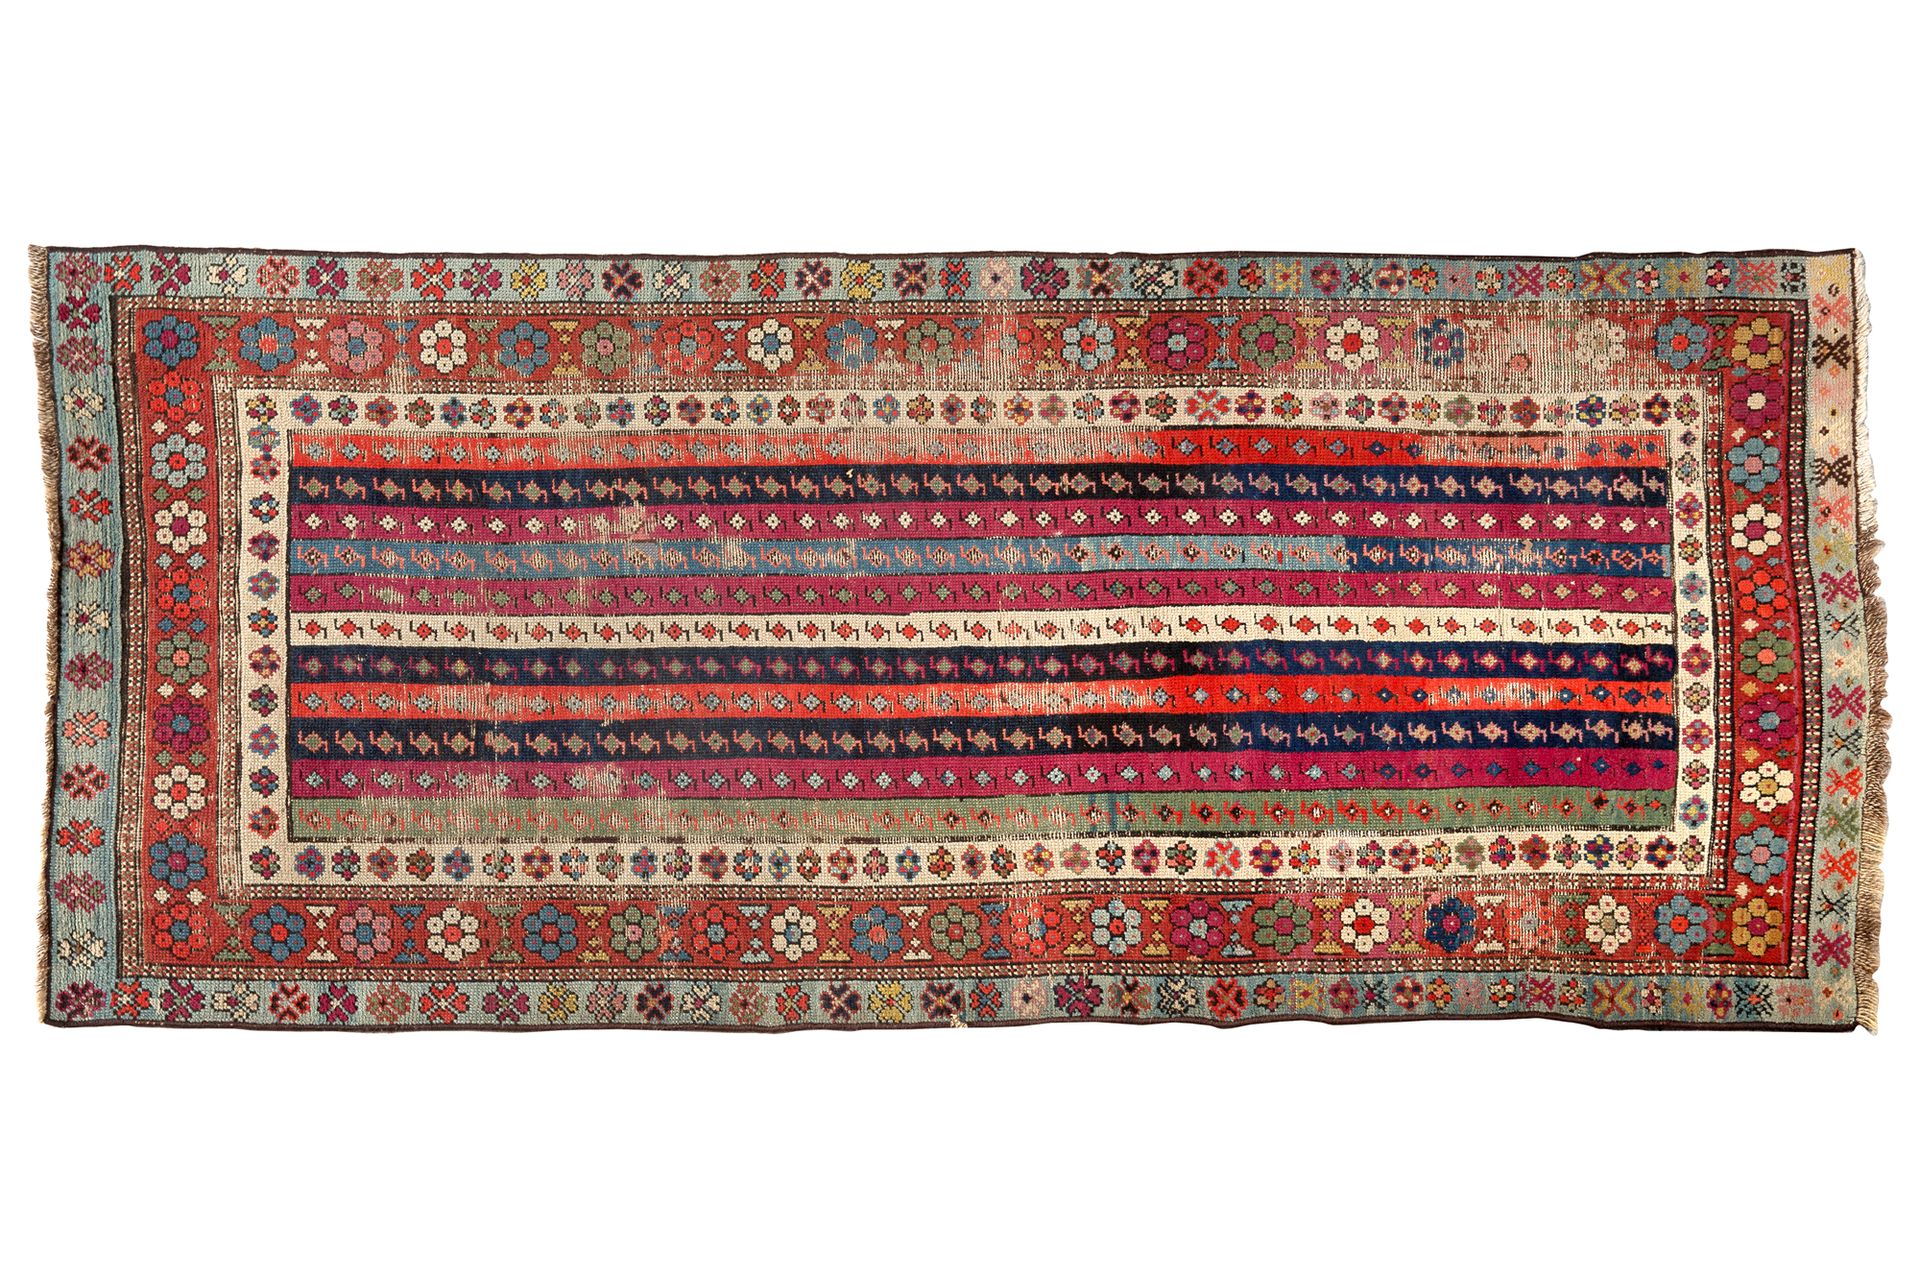 Null [ALFOMBRAS]
Talich (Cáucaso) ca. 1870/1880 Terciopelo de lana sobre base de&hellip;